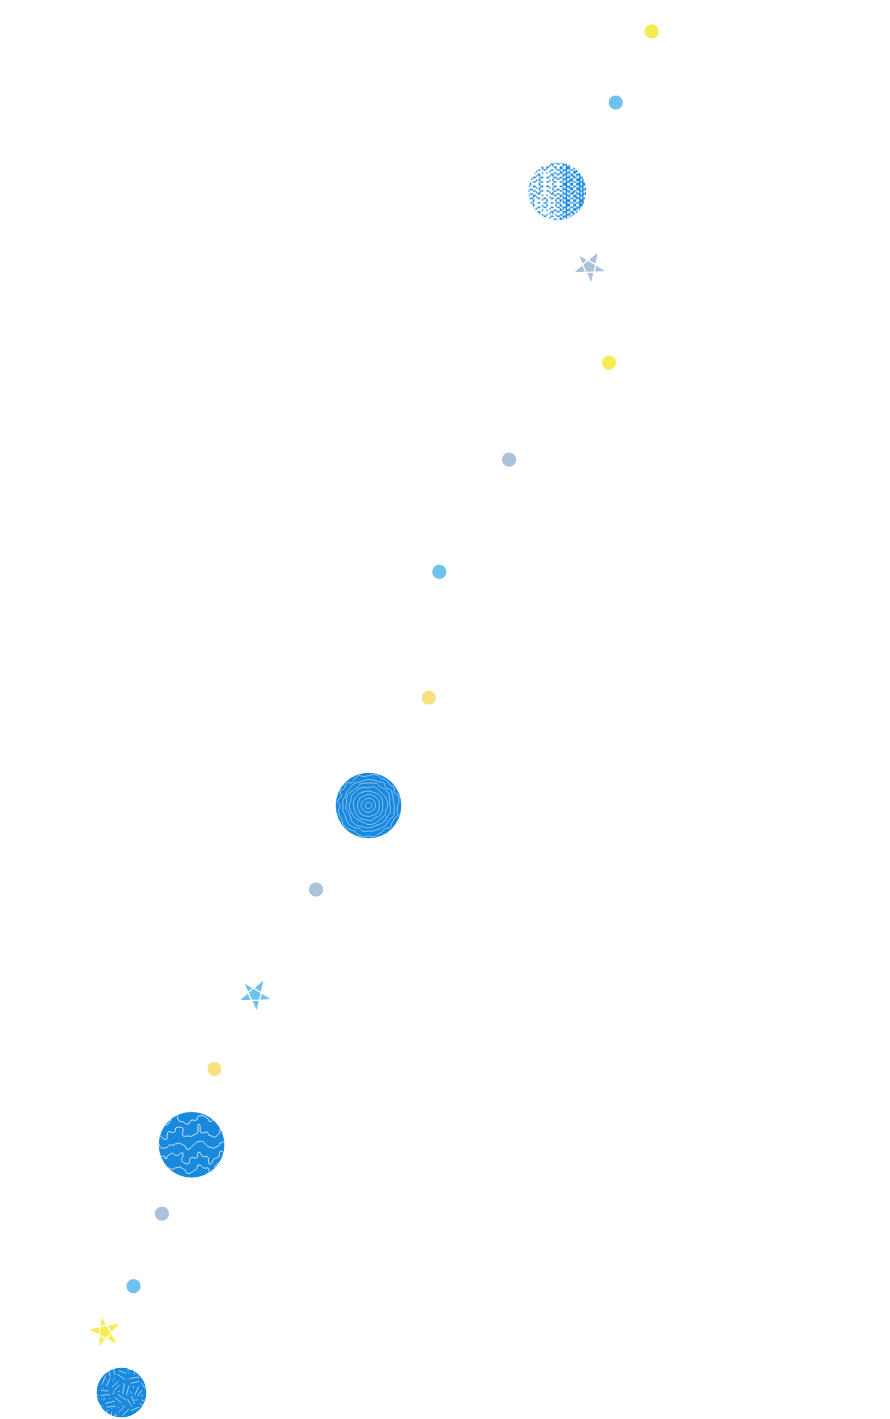 Route Item Image